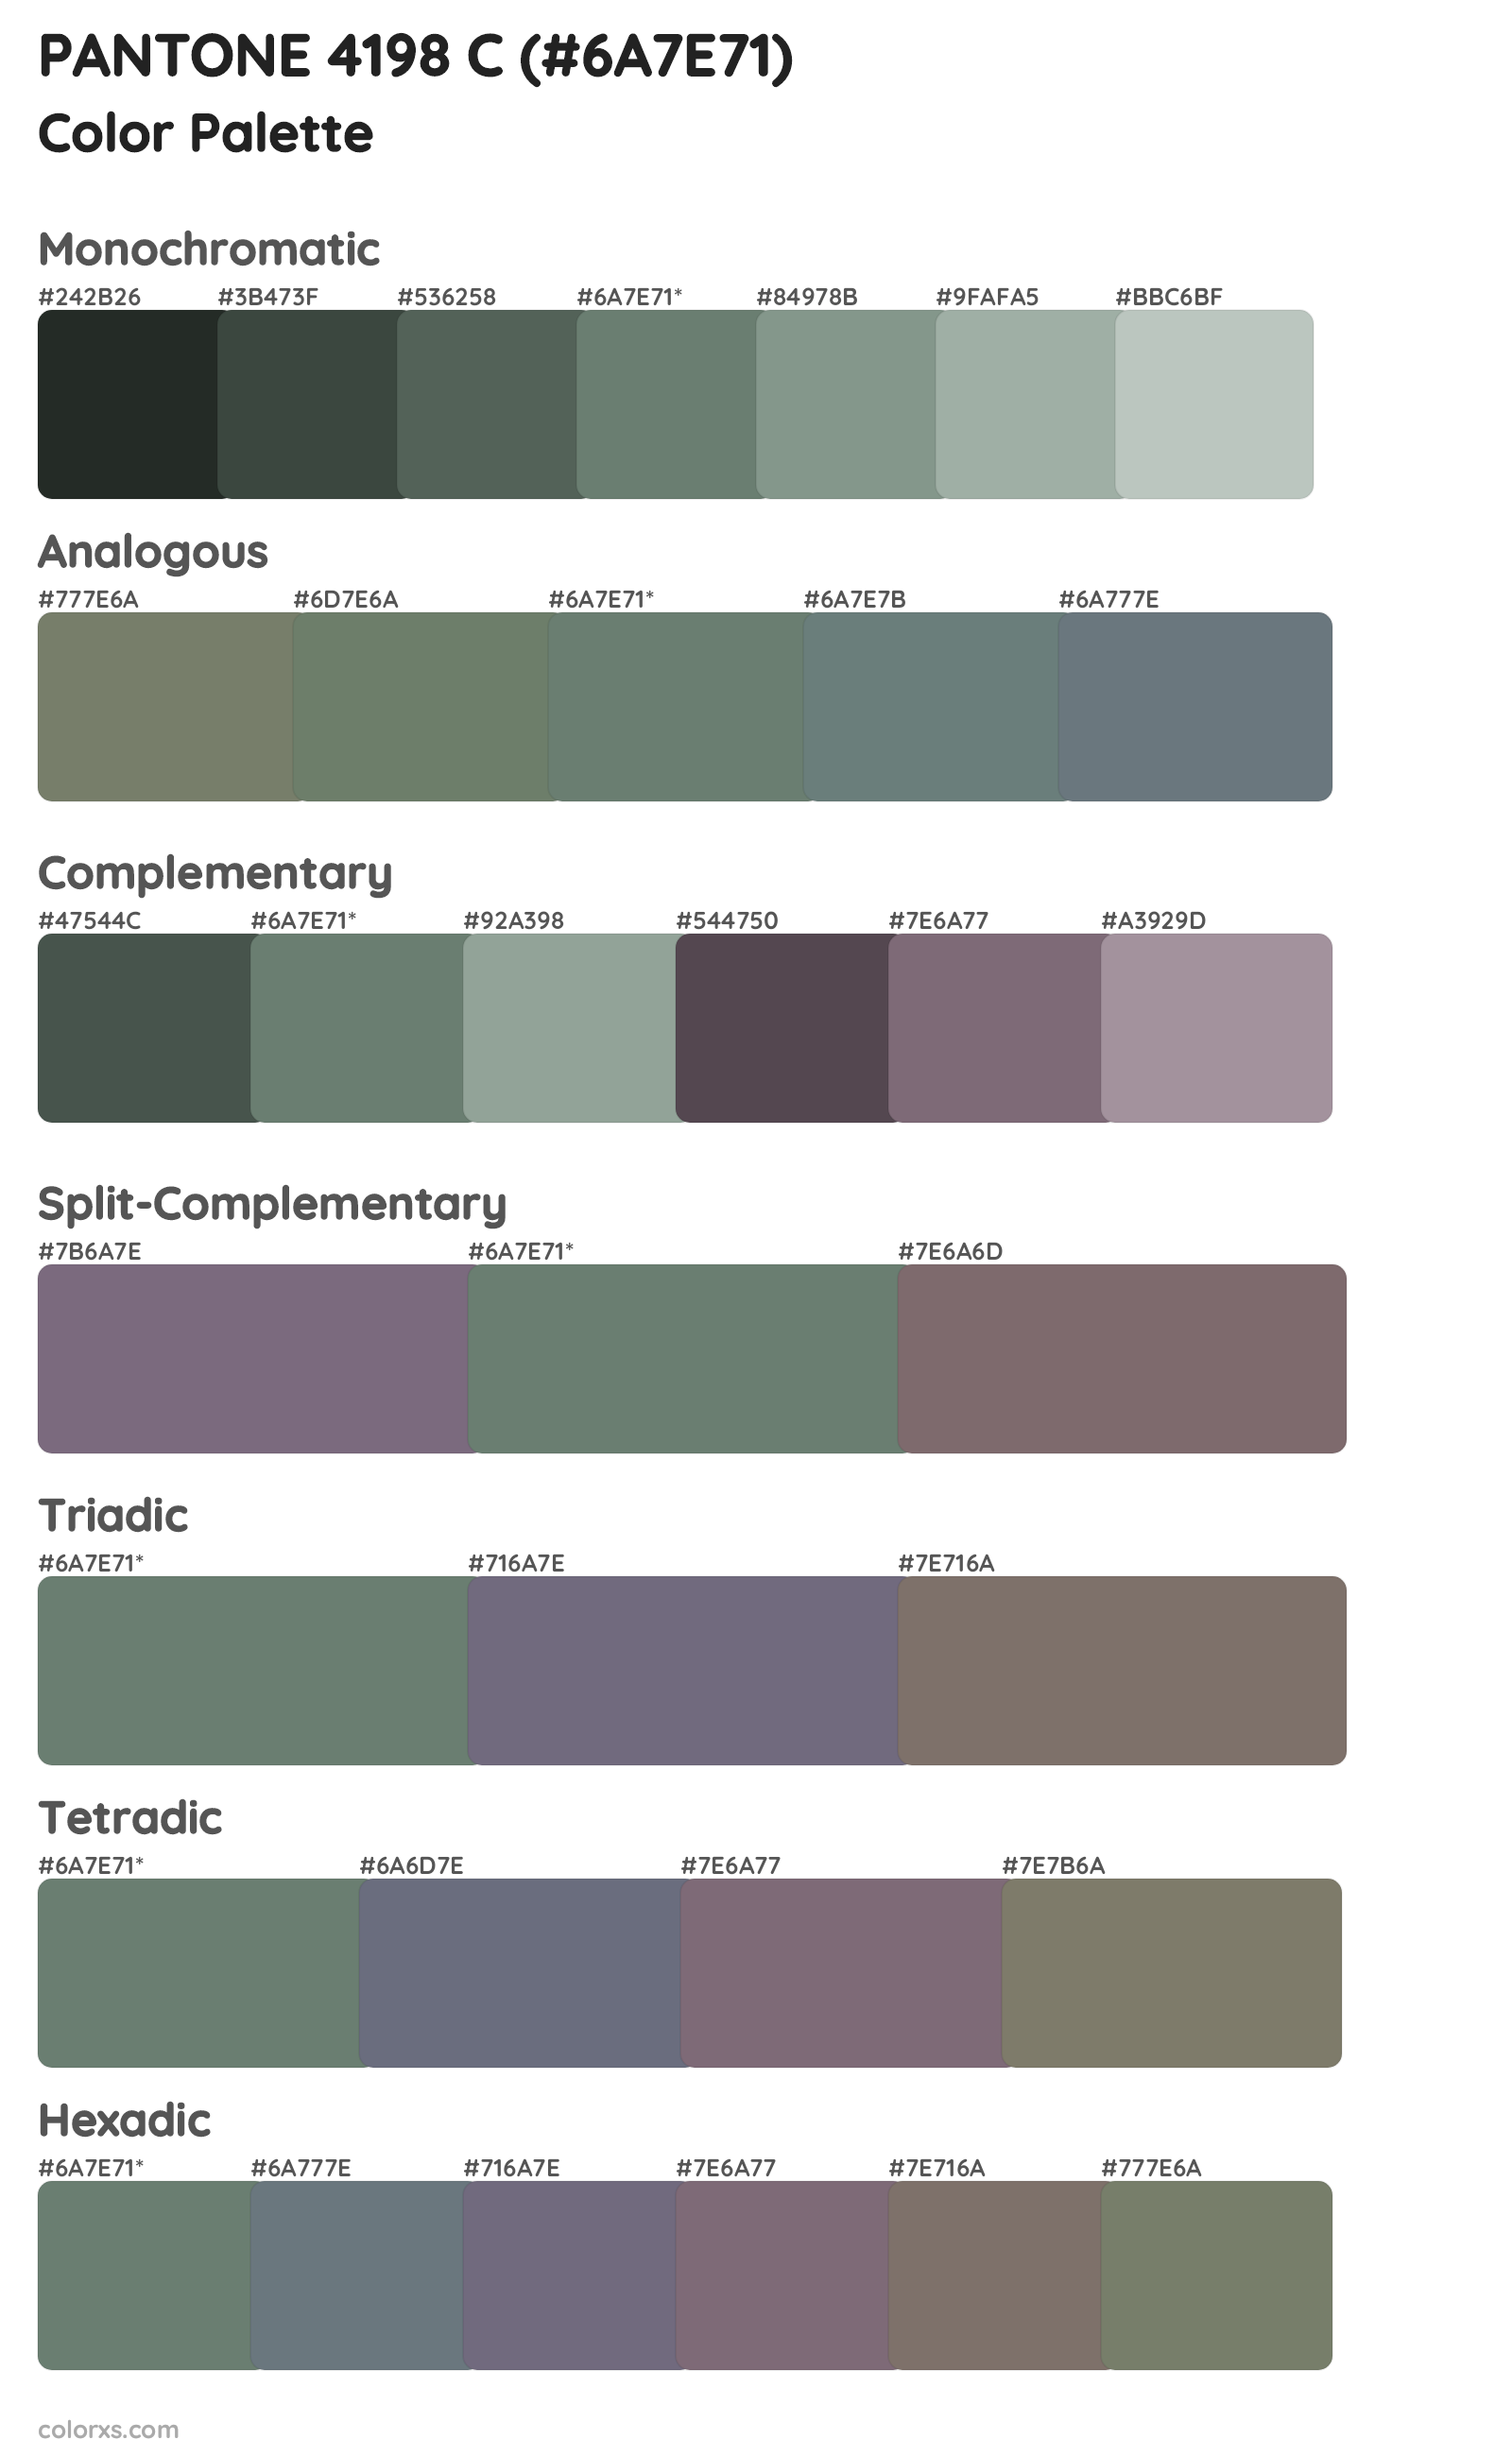 PANTONE 4198 C Color Scheme Palettes